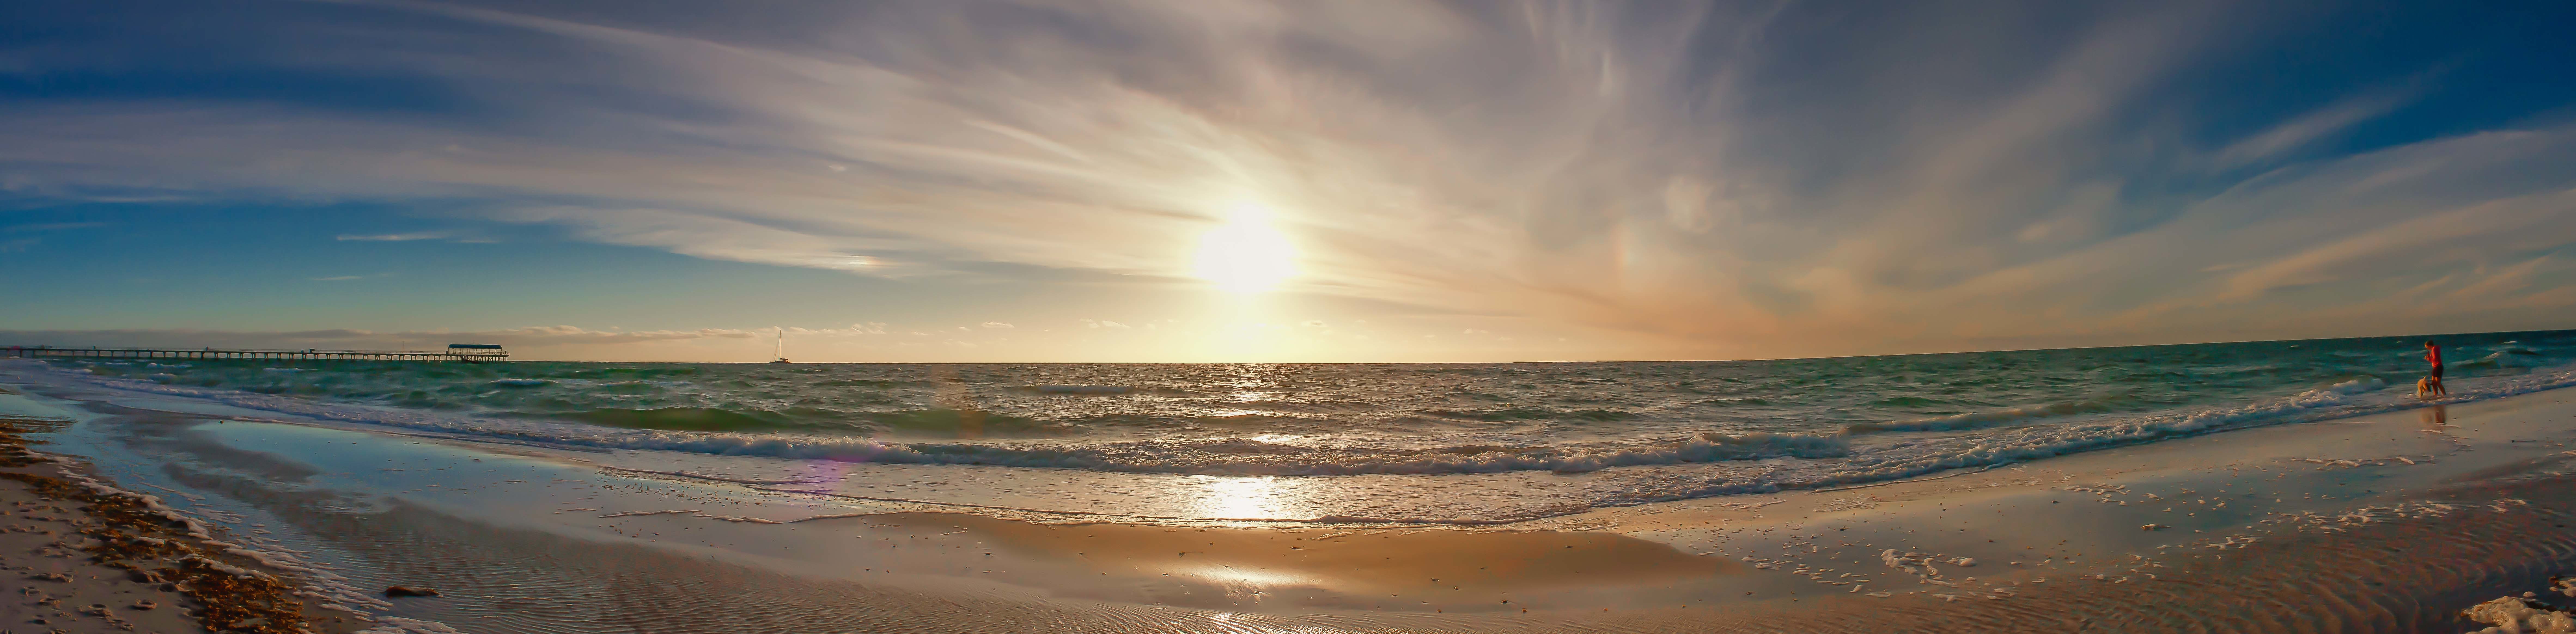 Best Photo Of Panorama Wallpaper Beach Waves Imagebank Biz